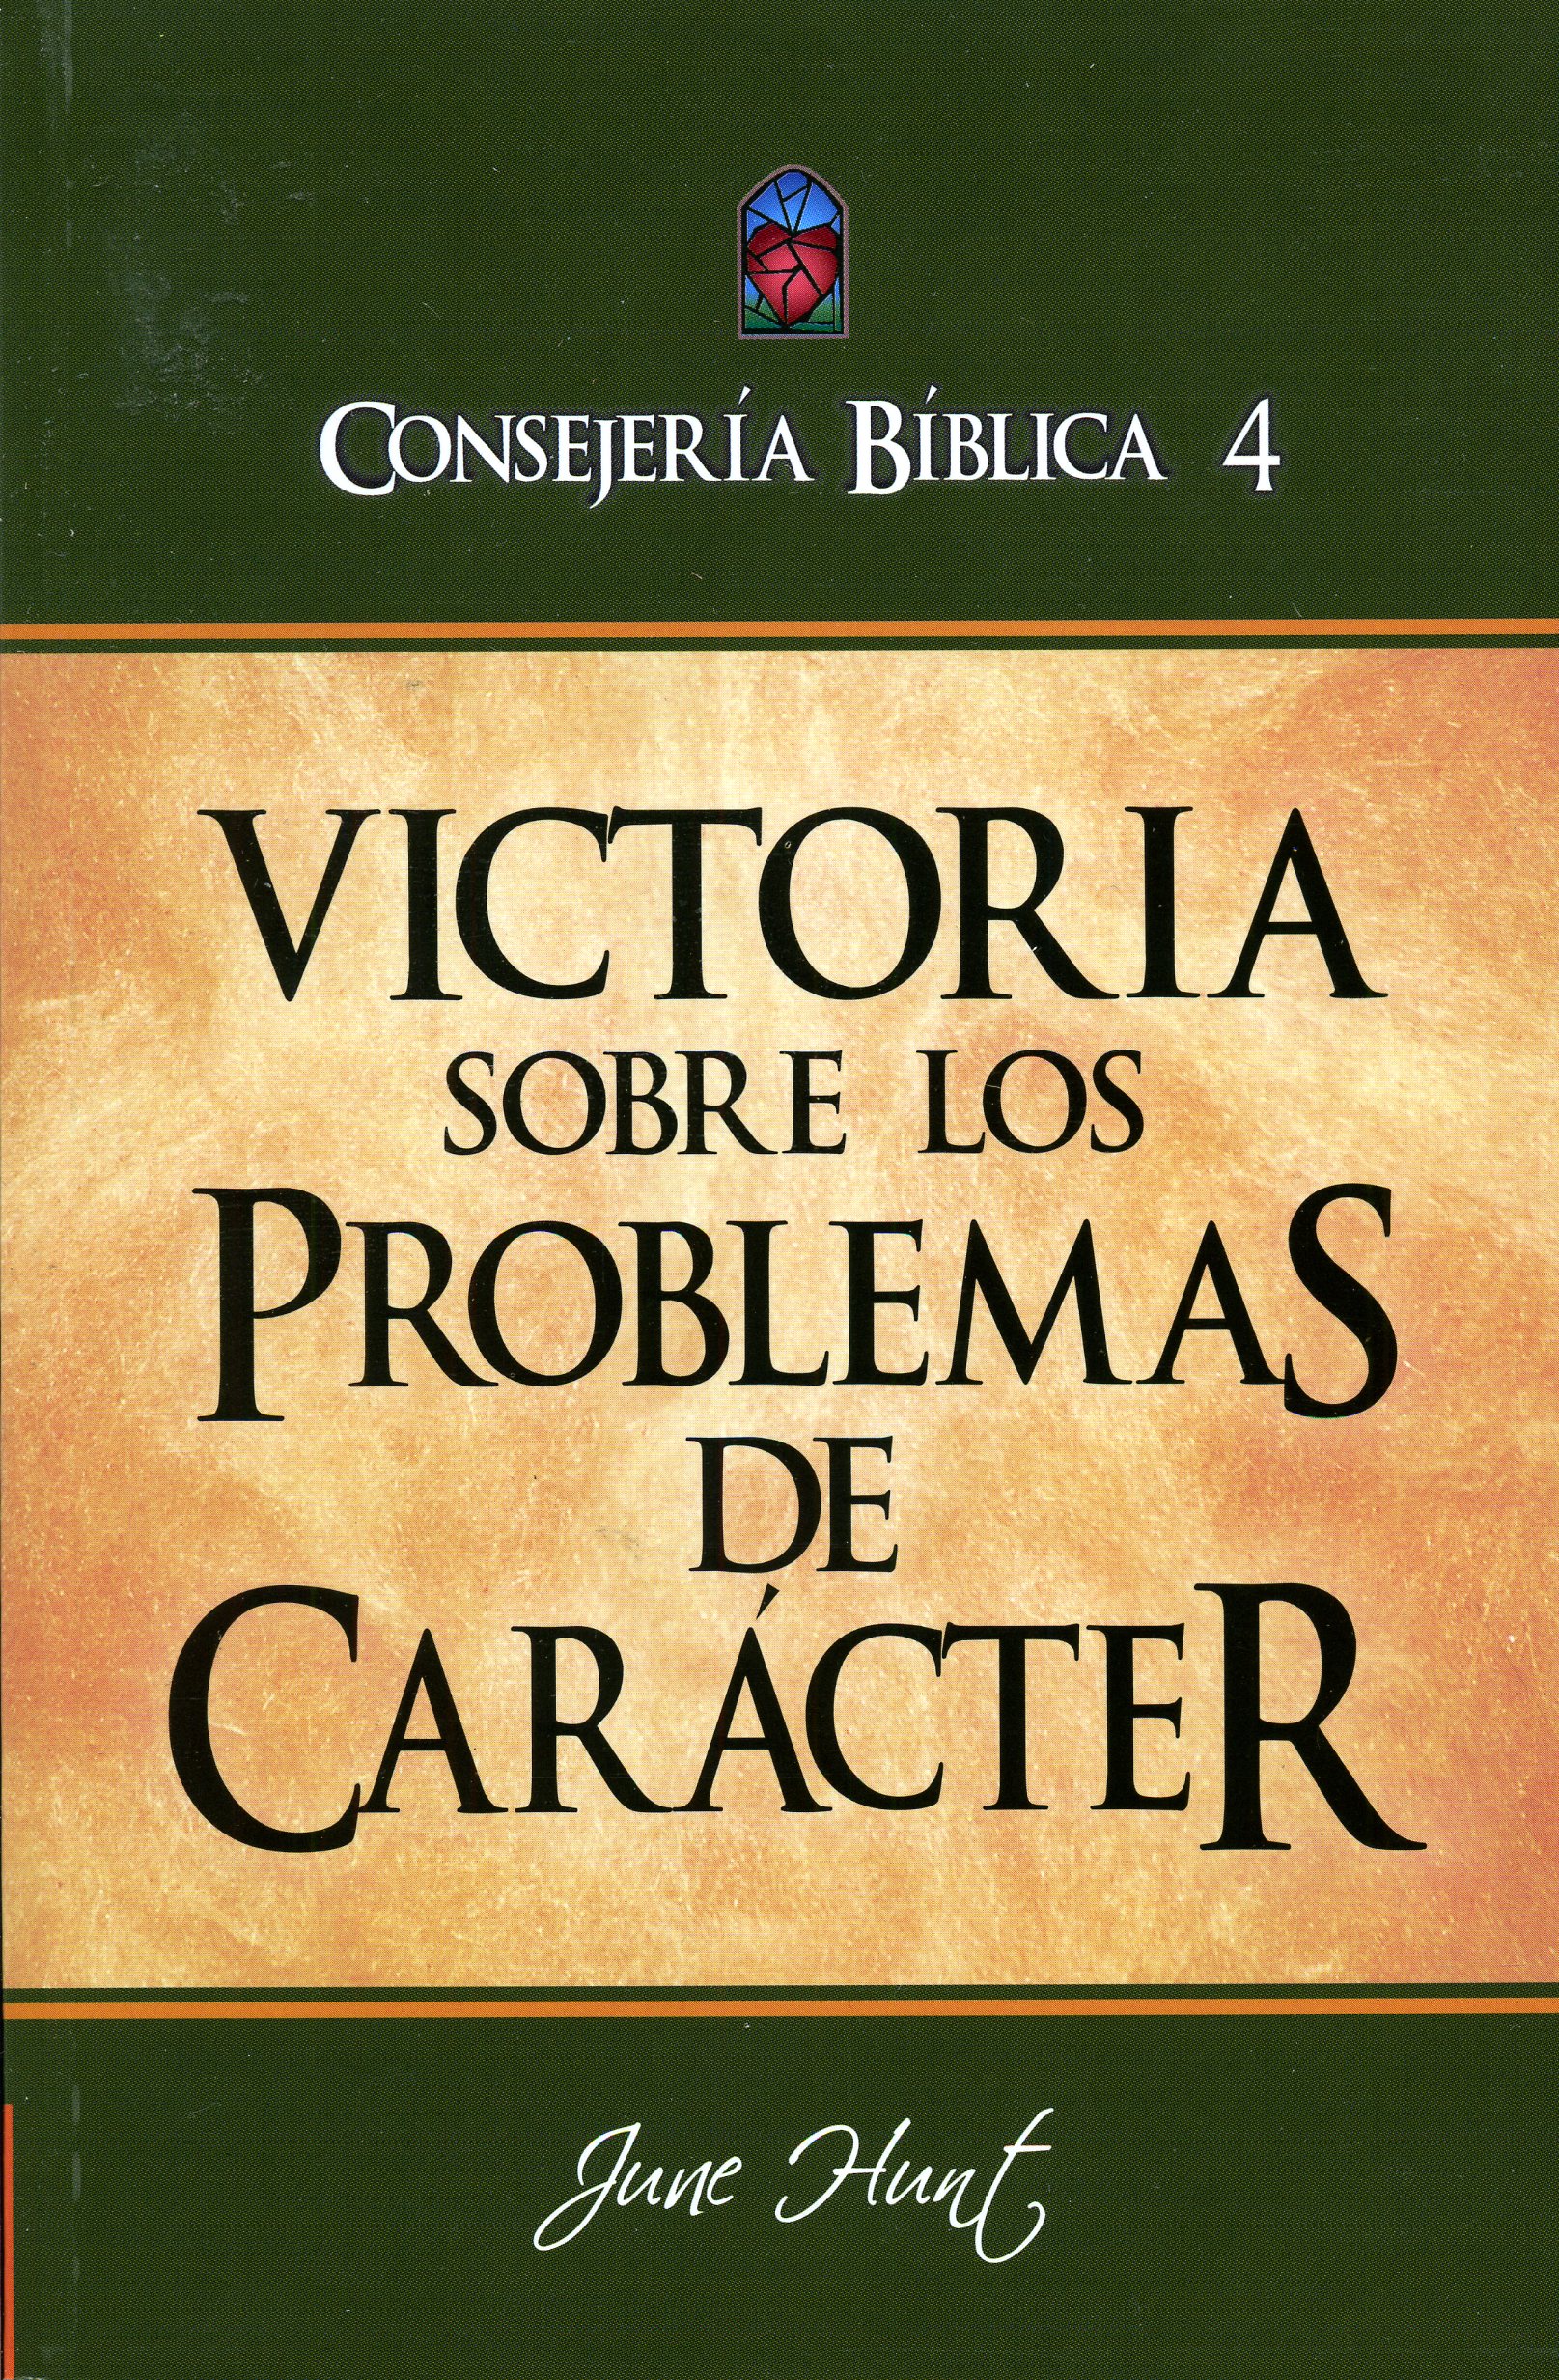 Consejería Bíblica 4 - Victoria Sobre los Problemas de Caracter